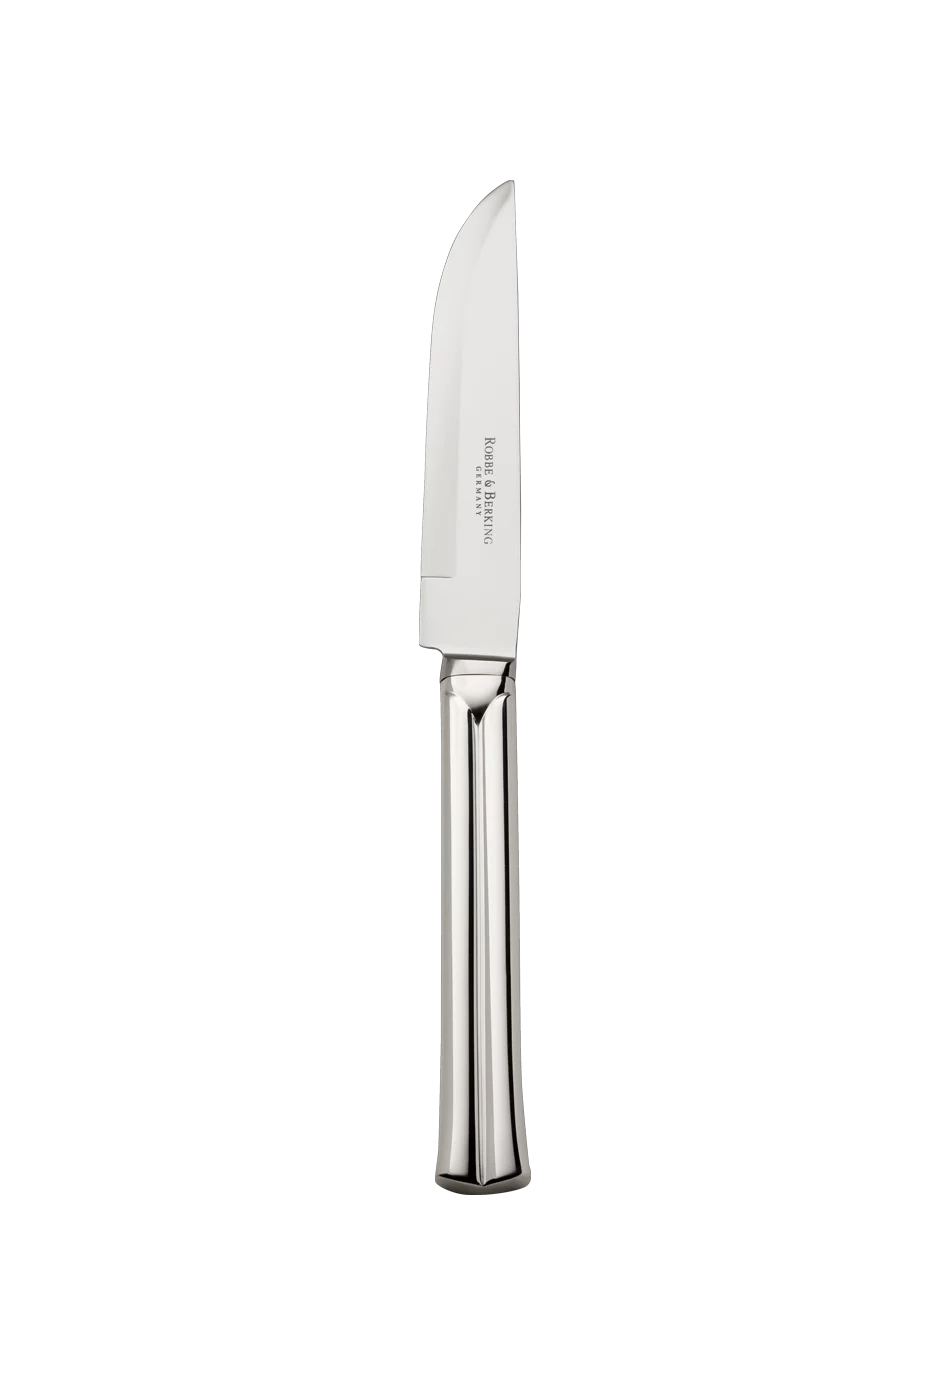 Viva Steak Knife (925 Sterling Silver)